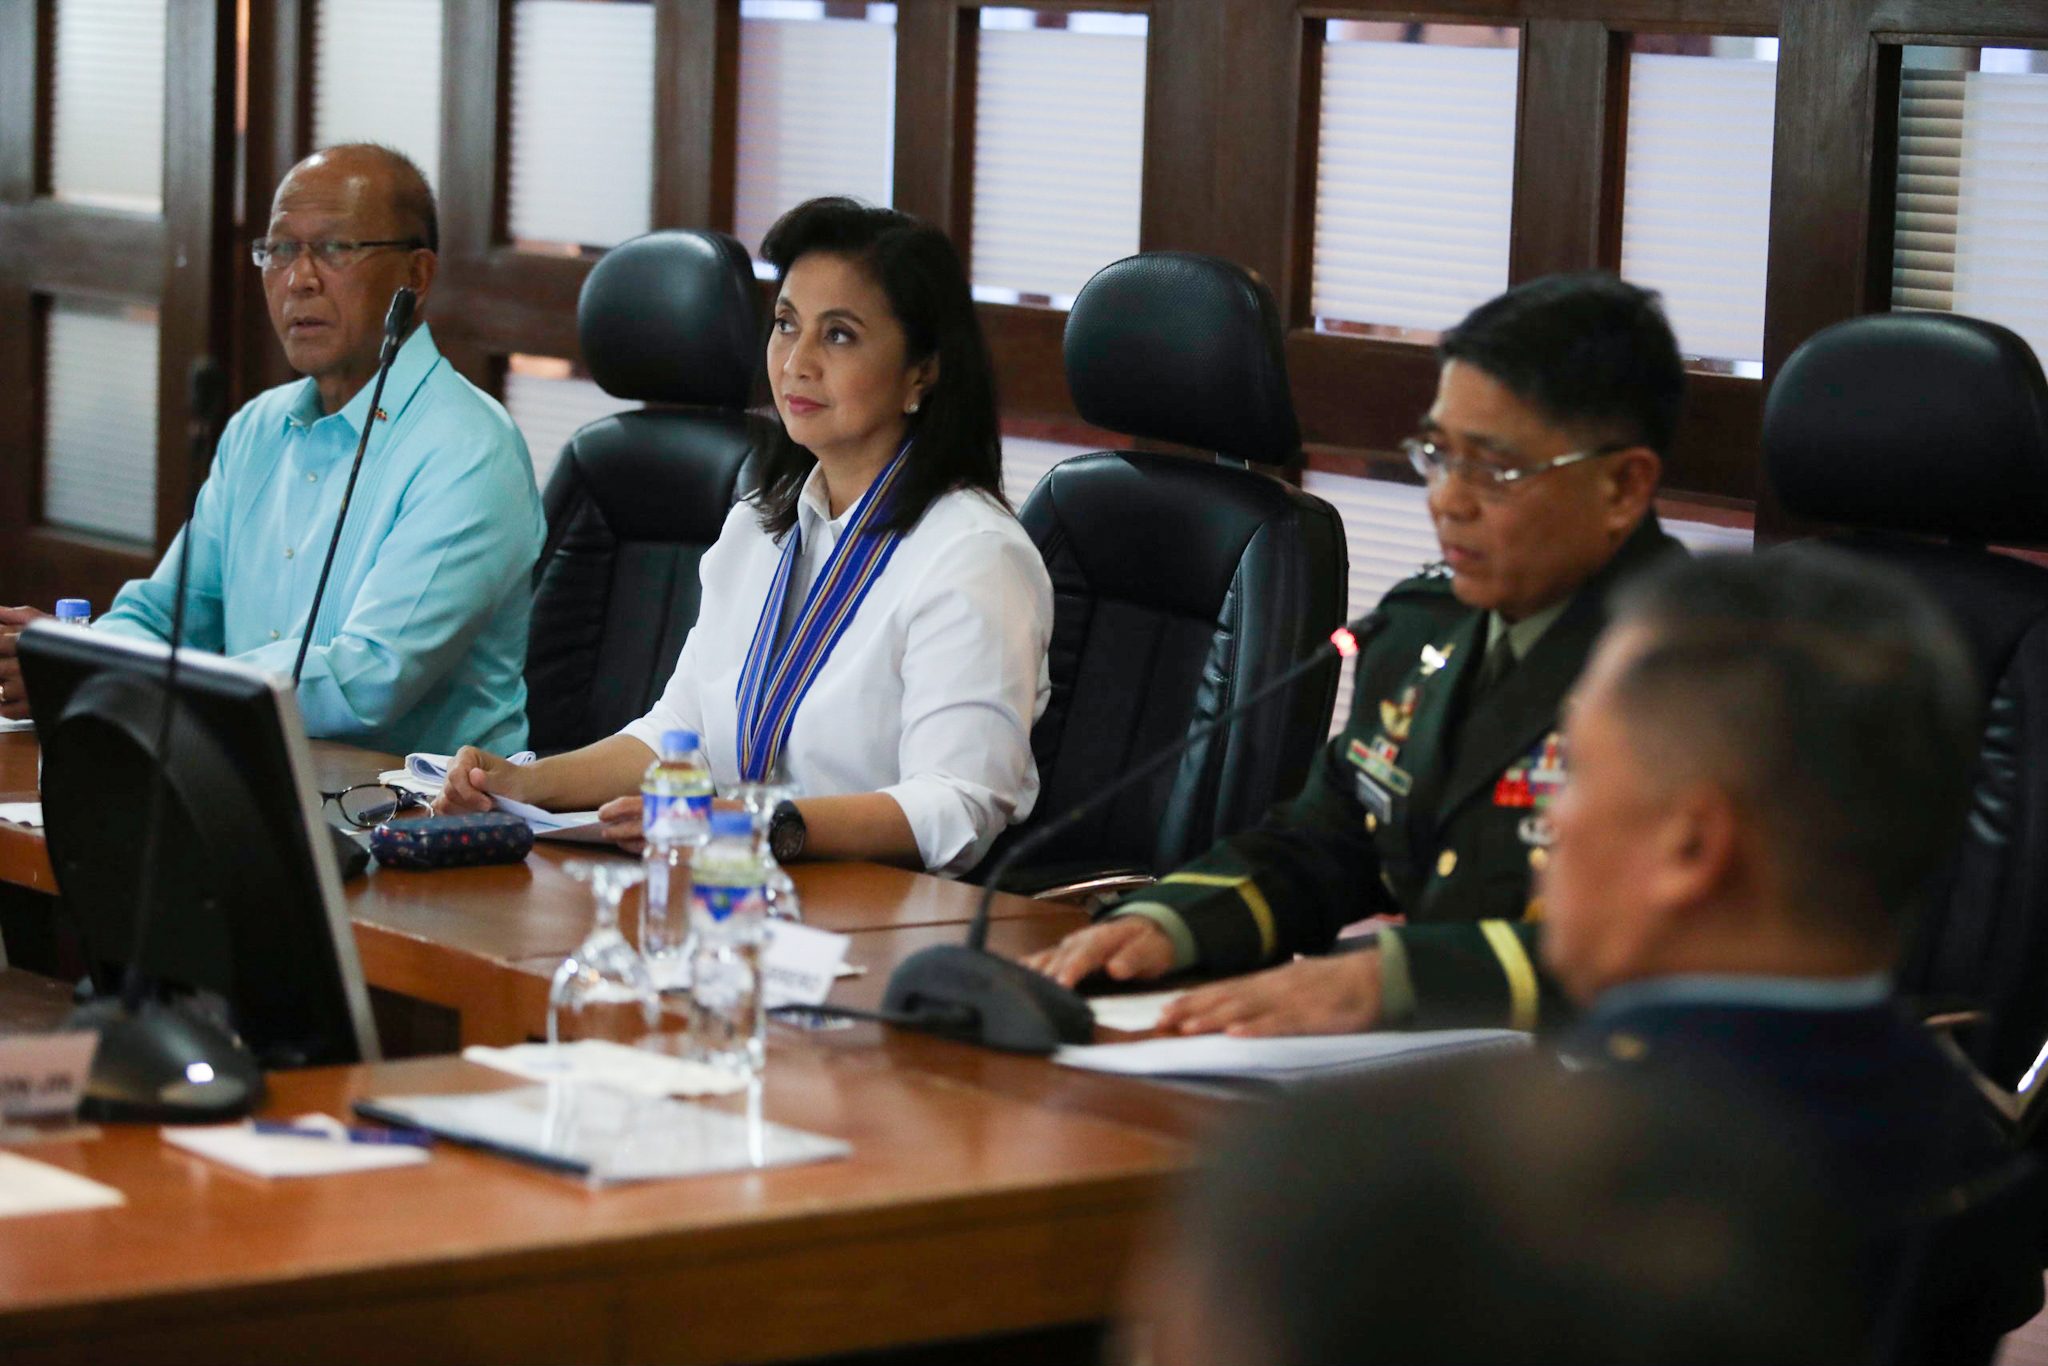 AFP, DND assure Robredo: No support for revolutionary government